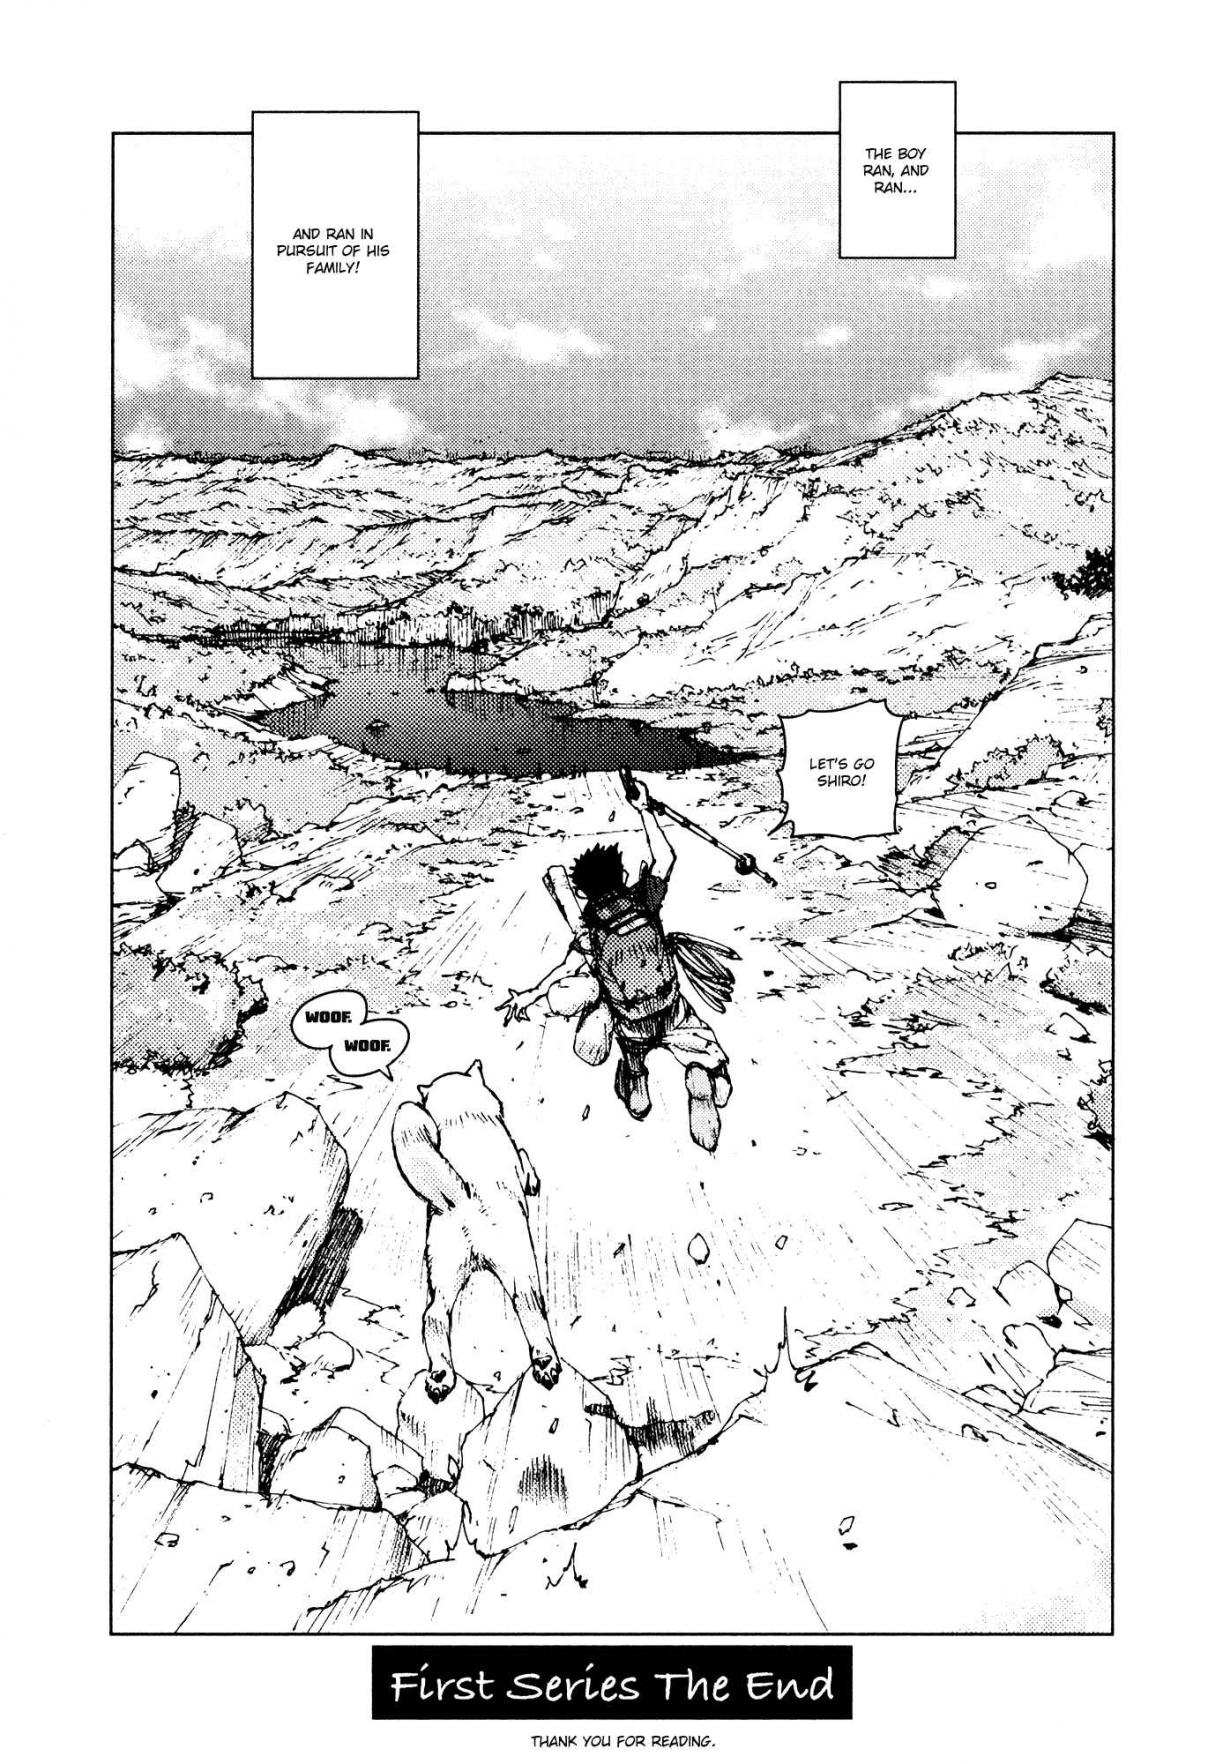 Survival: Shounen S no Kiroku Vol. 5 Ch. 96 Danger 96